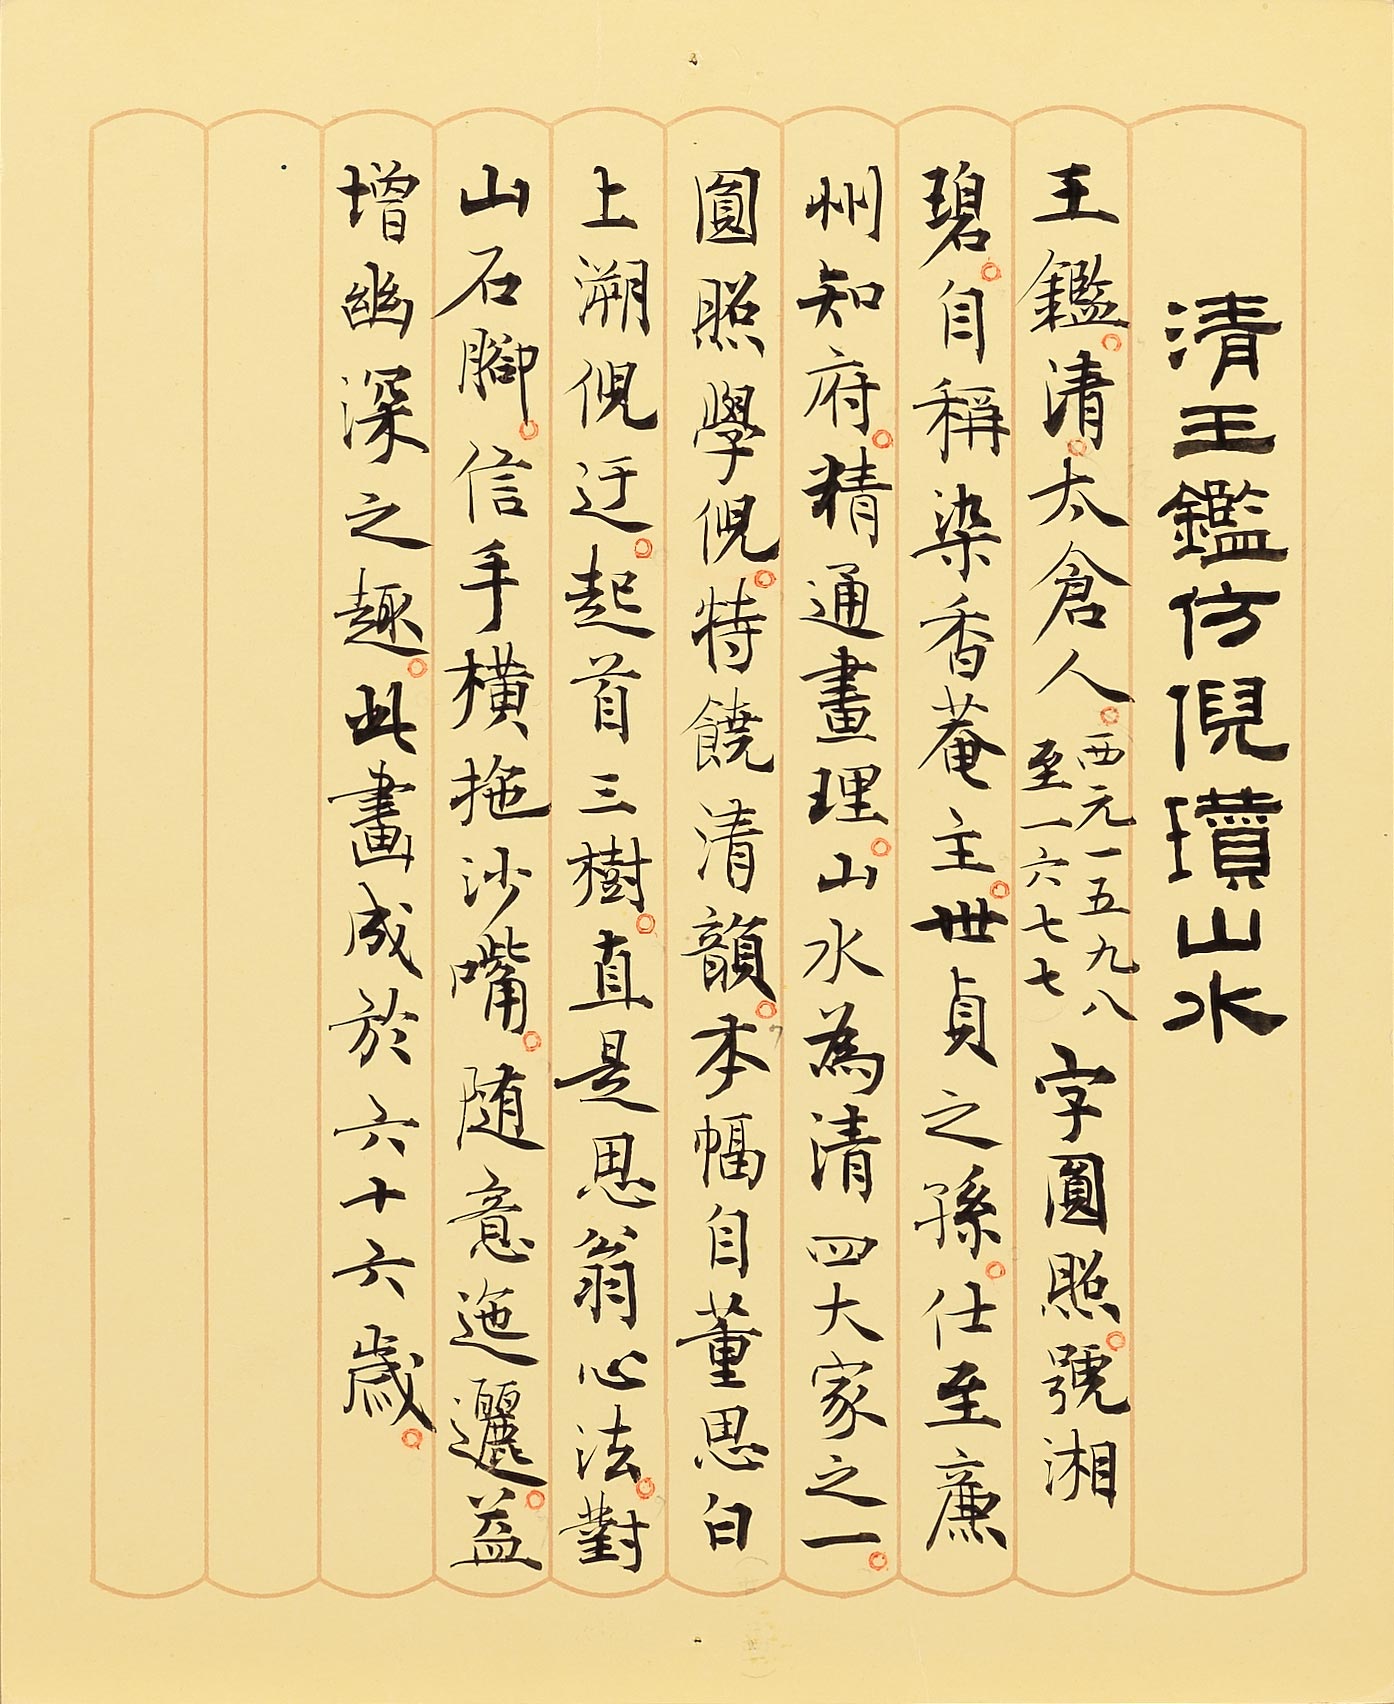 民國五十年代中期以後出現的墨書說明卡。撰文書寫者為傅申先生。